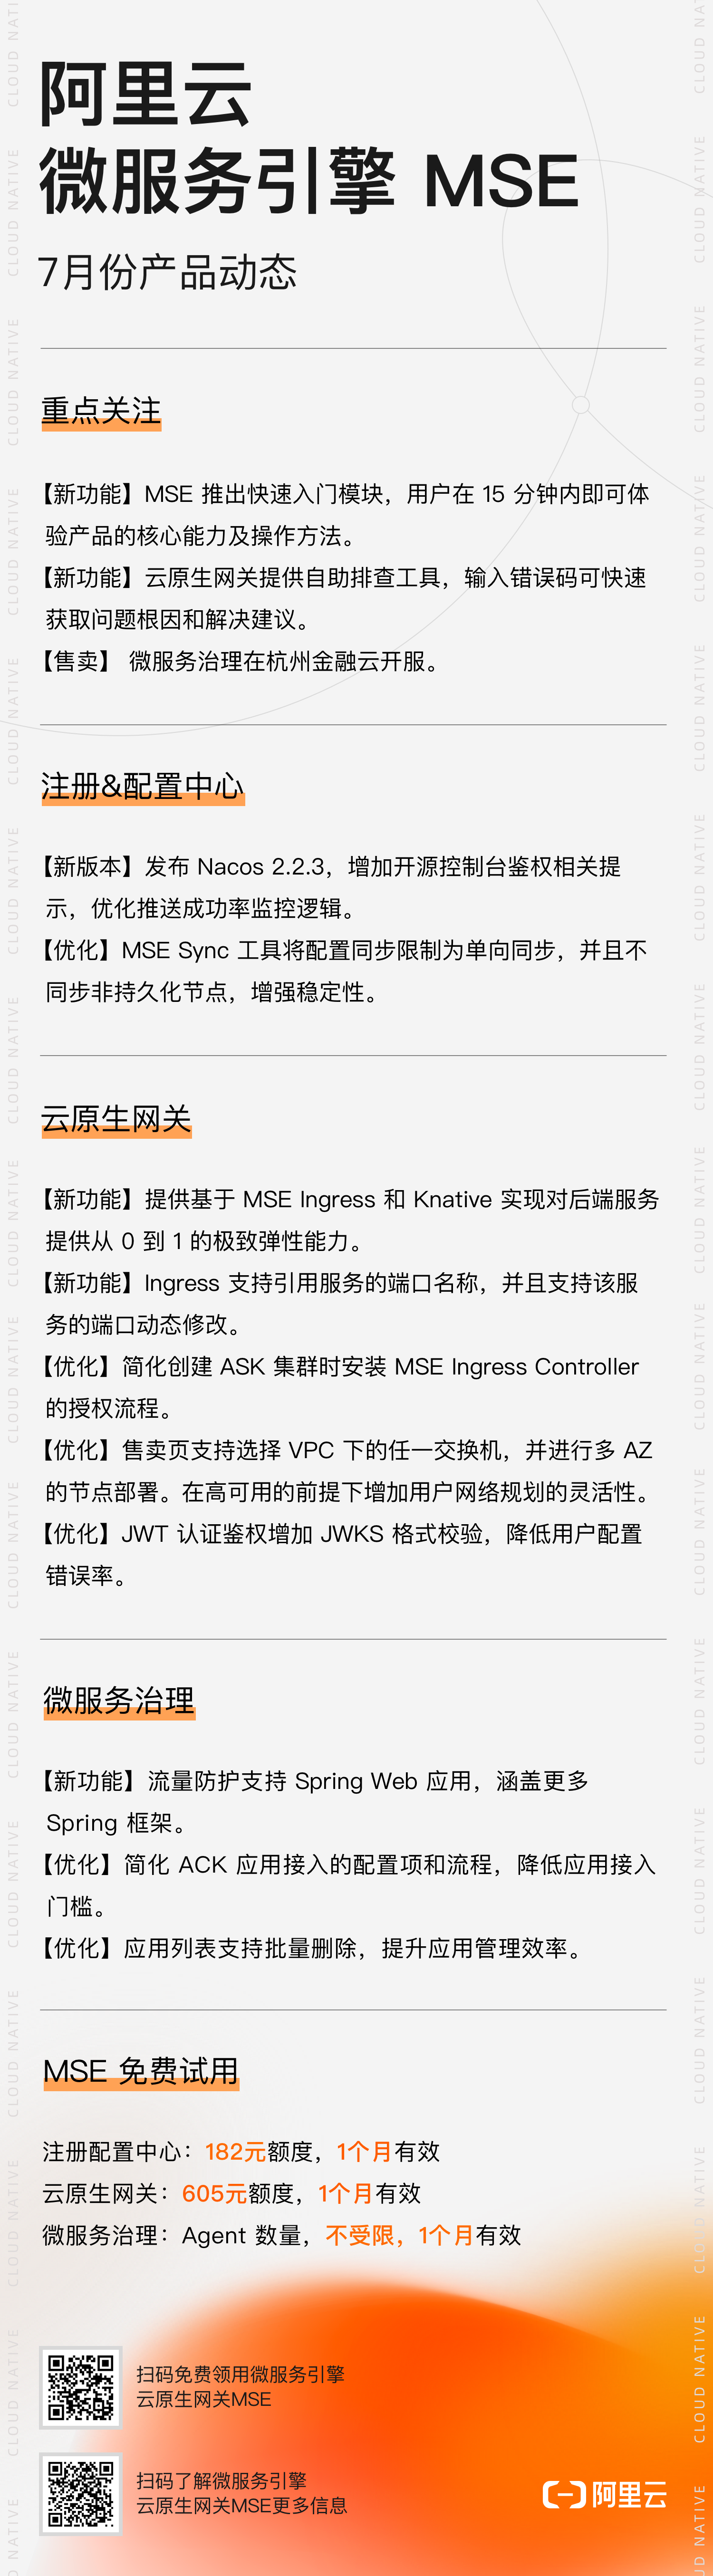 阿里云微服务引擎 MSE 7月份产品动态.png